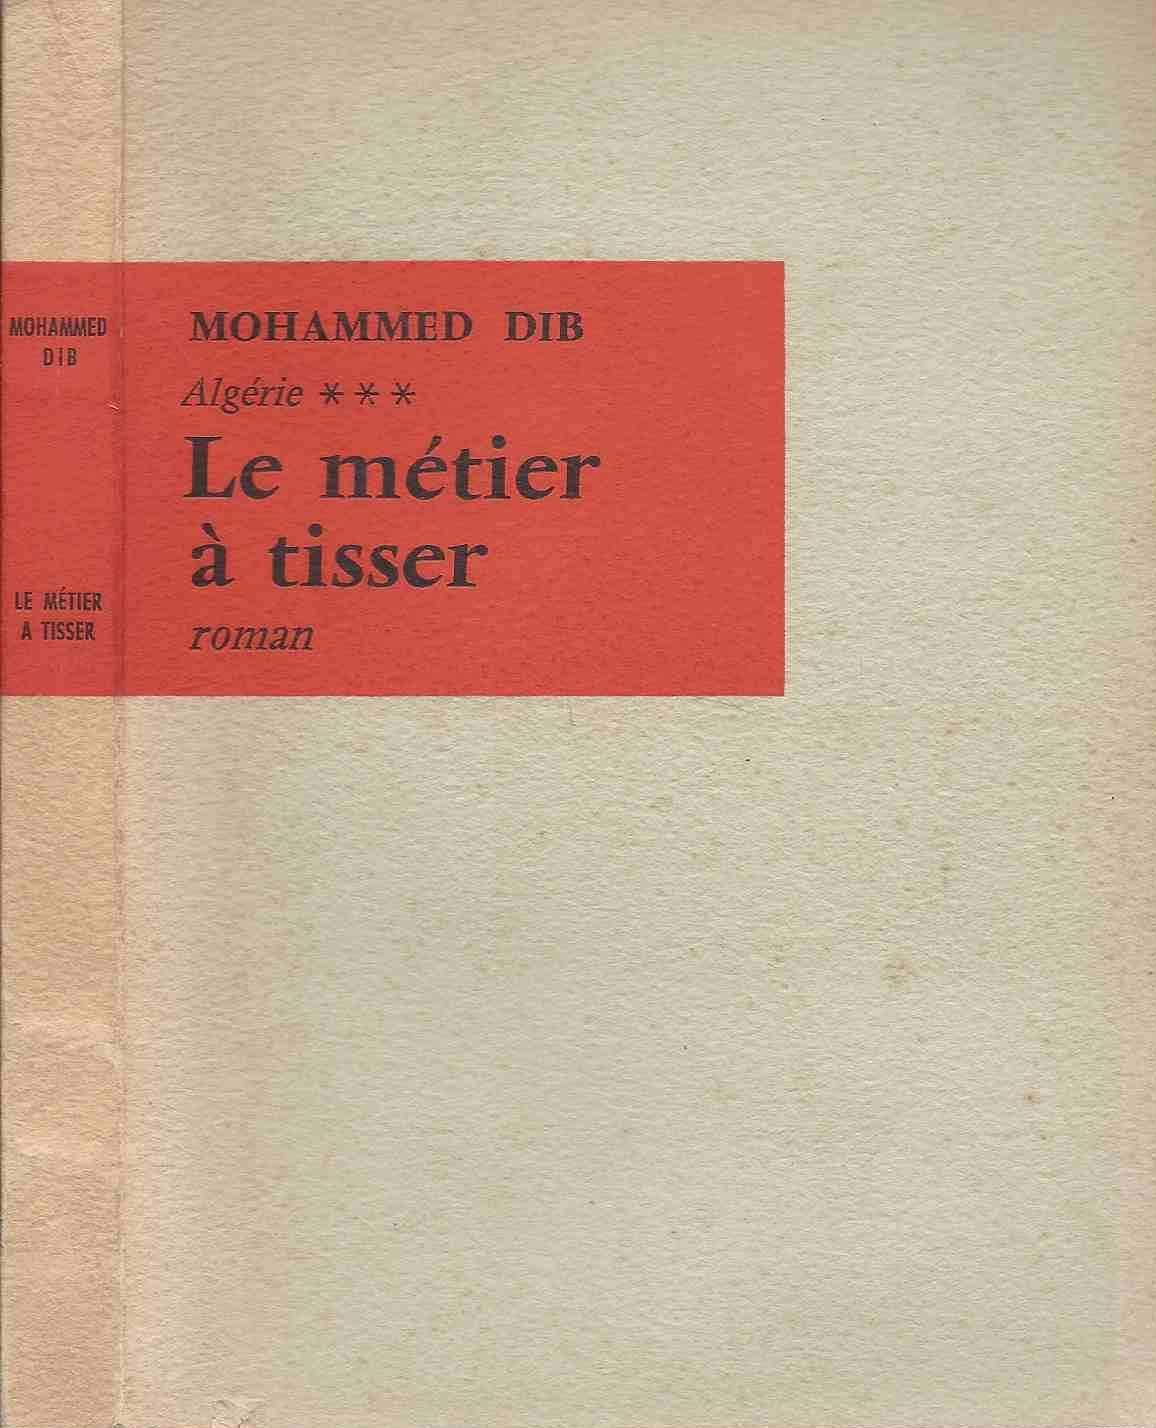 غلاف رواية النّول باللغة الفرنسية - ثلاثية الدار الكبيرة والحريق والنول رائعة محمد الديب